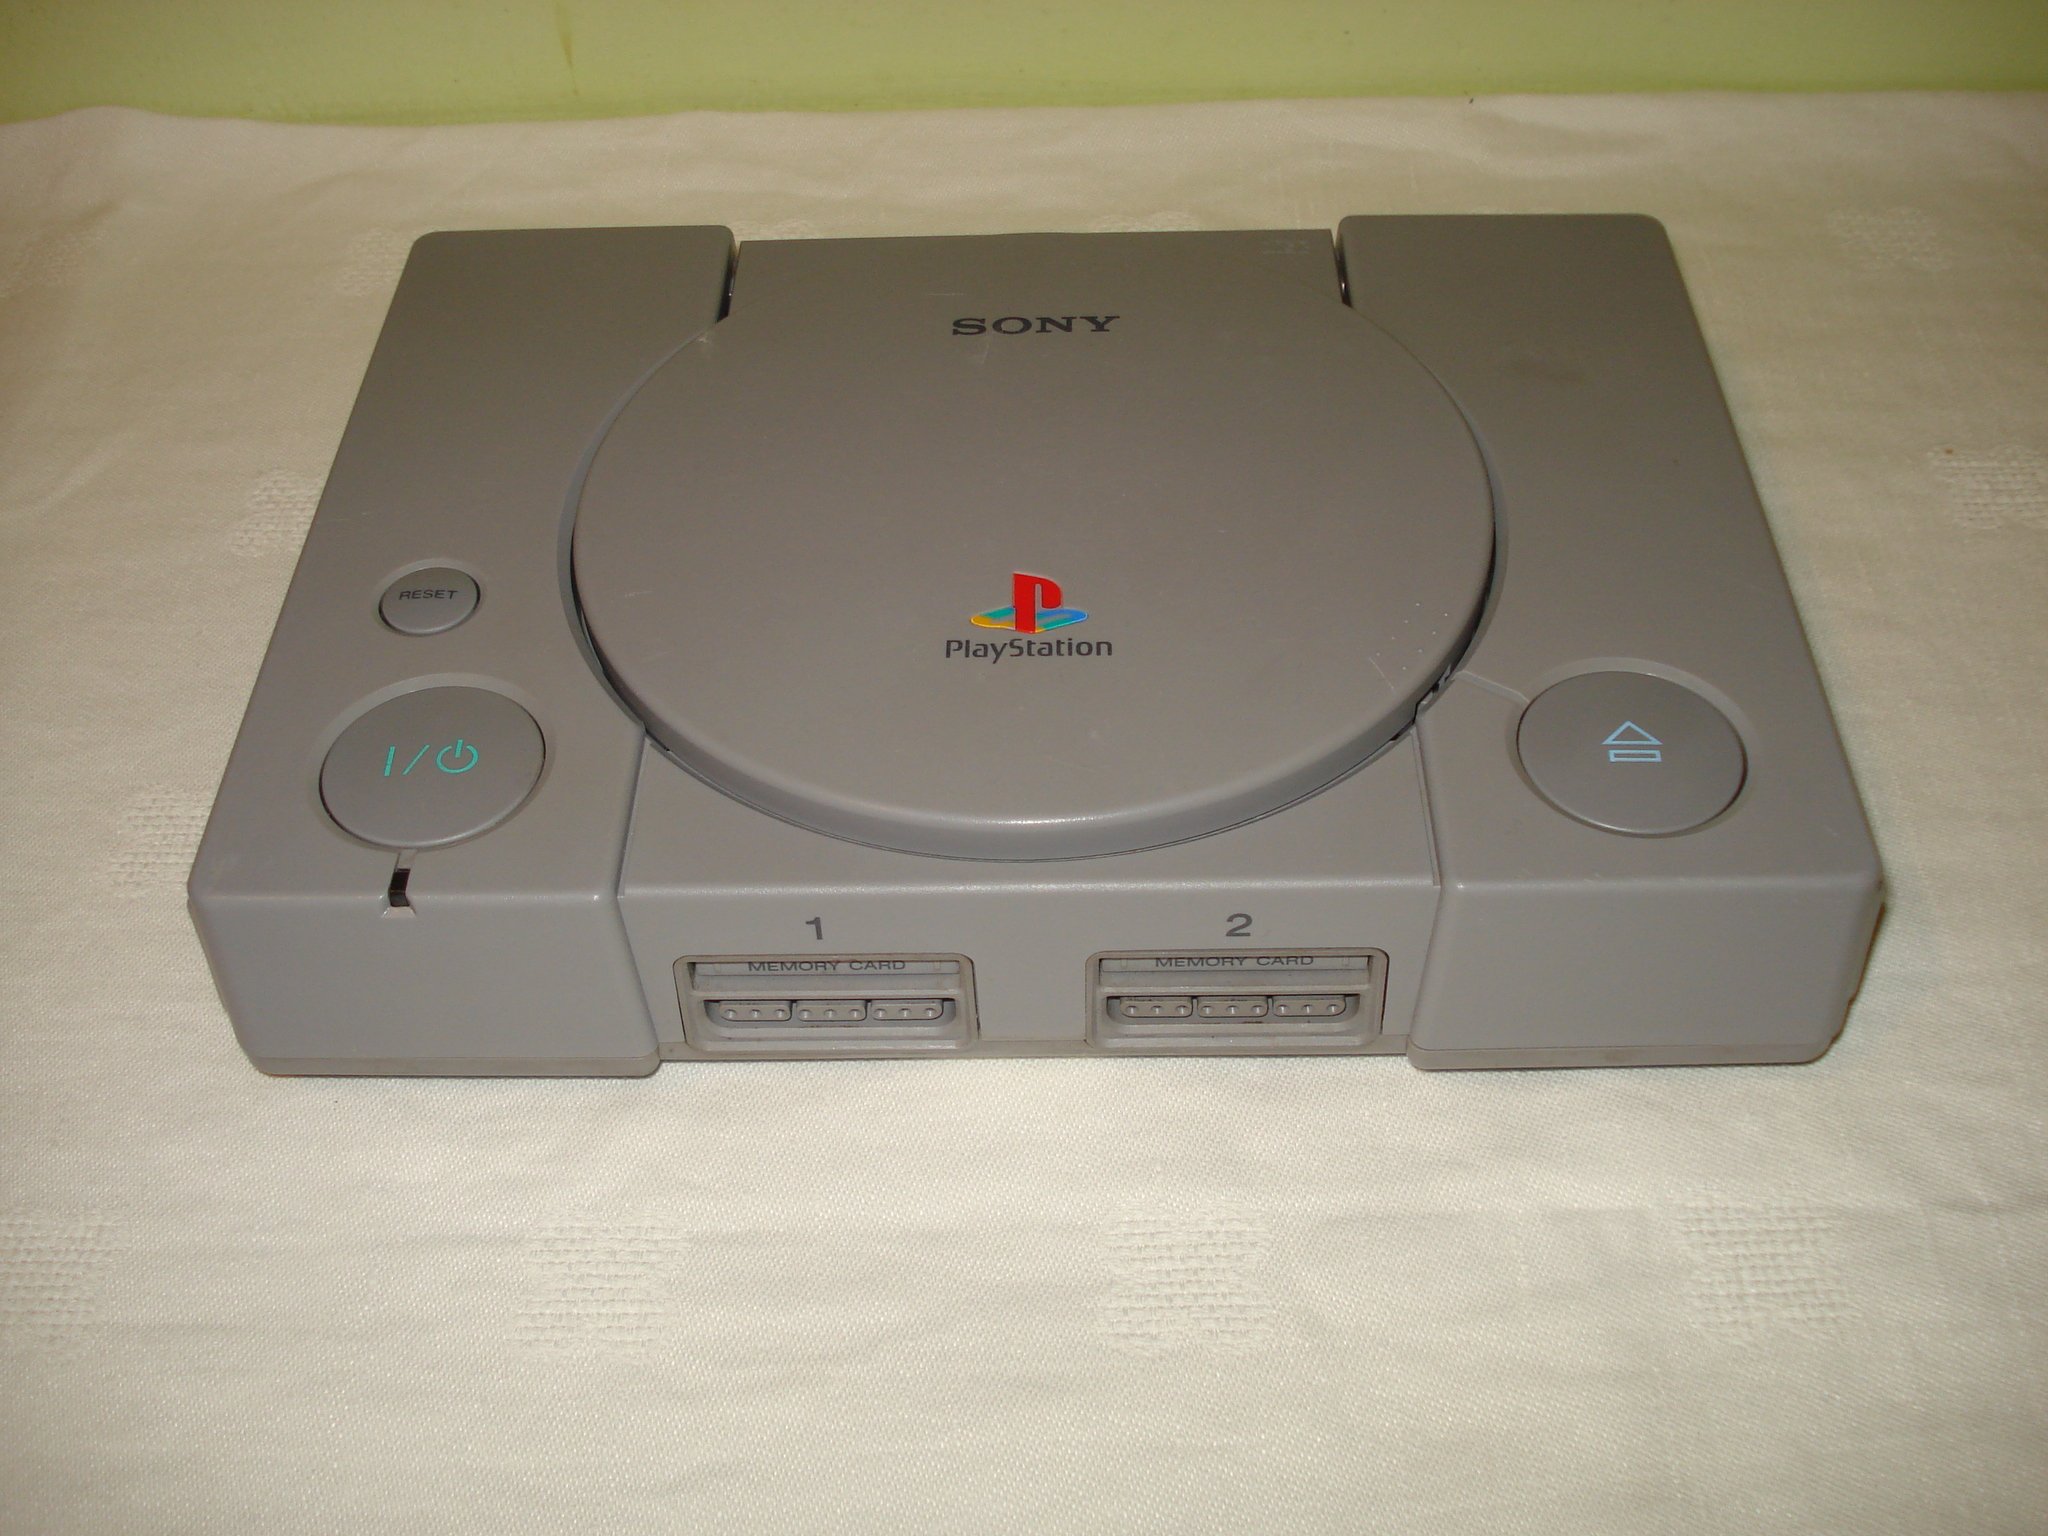 Konsola SONY PlayStation PSX SCPH-7502 przerobiona